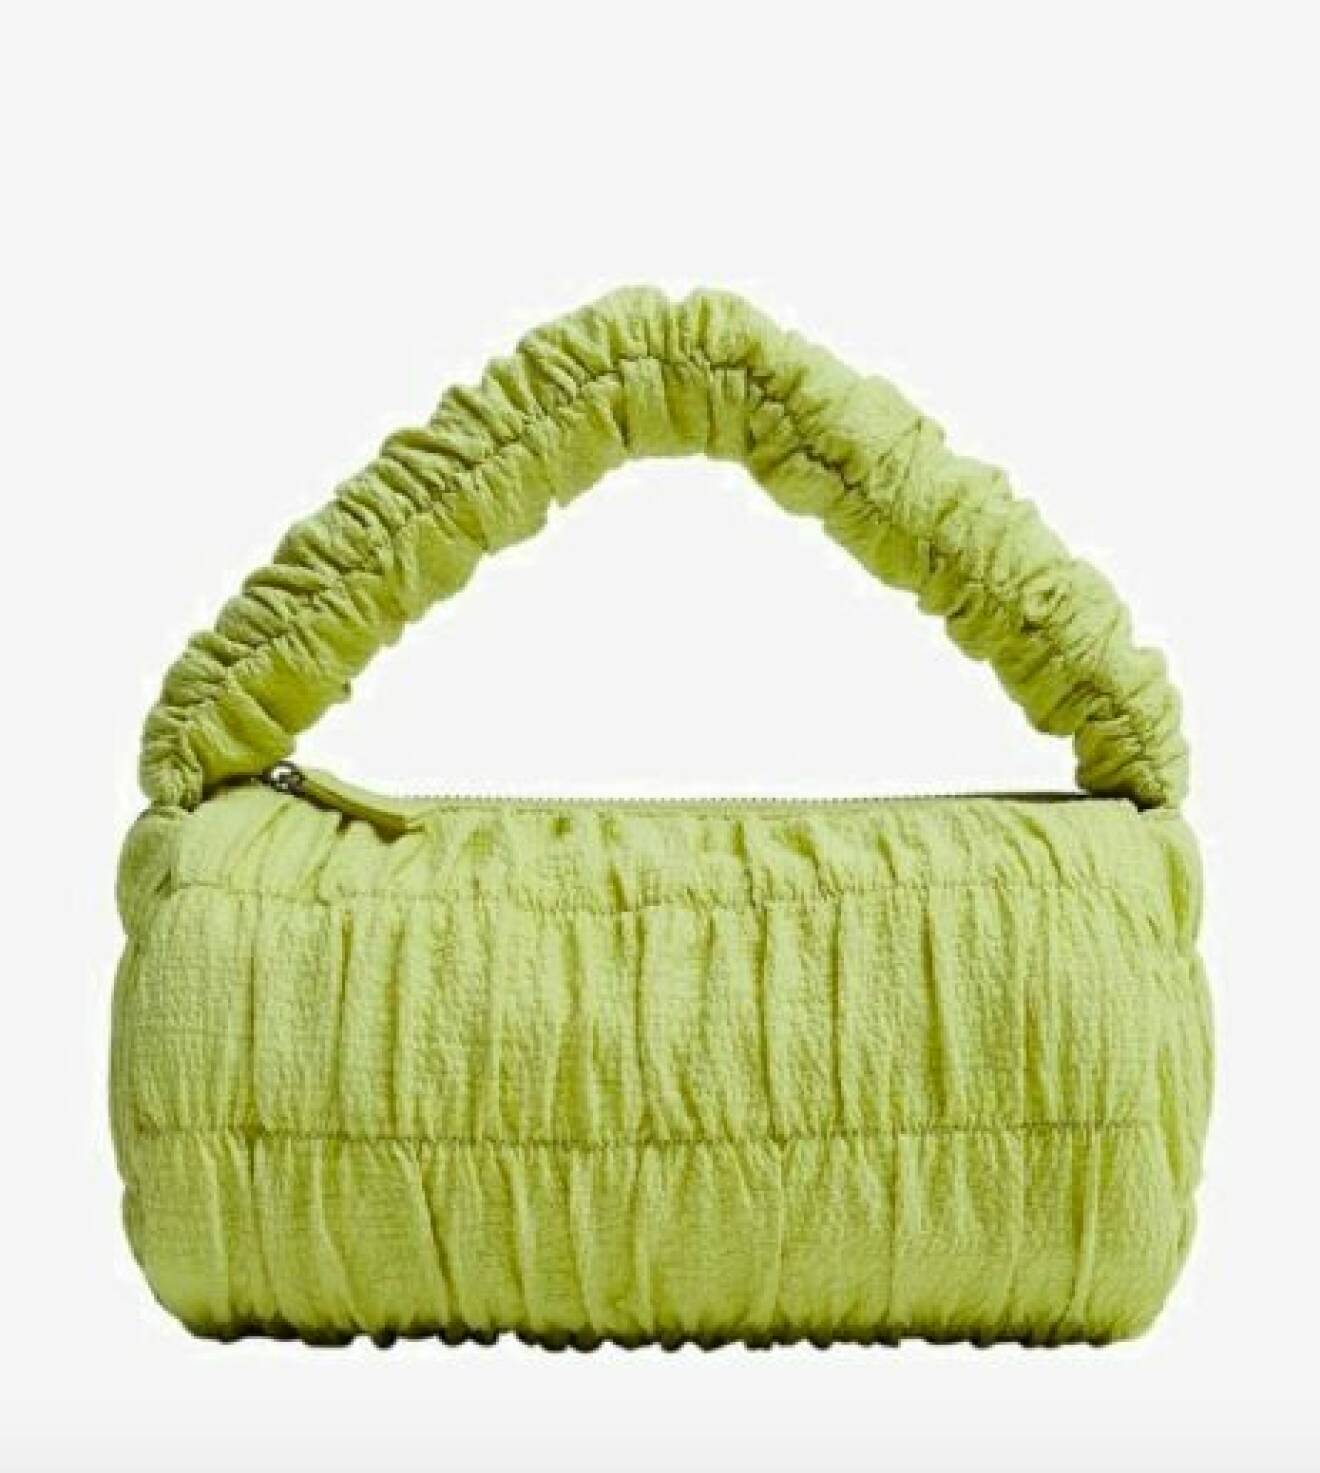 Ljusgrön axelremsväska med draperat tyg över både väskan och axelrem. Väska från Mango.